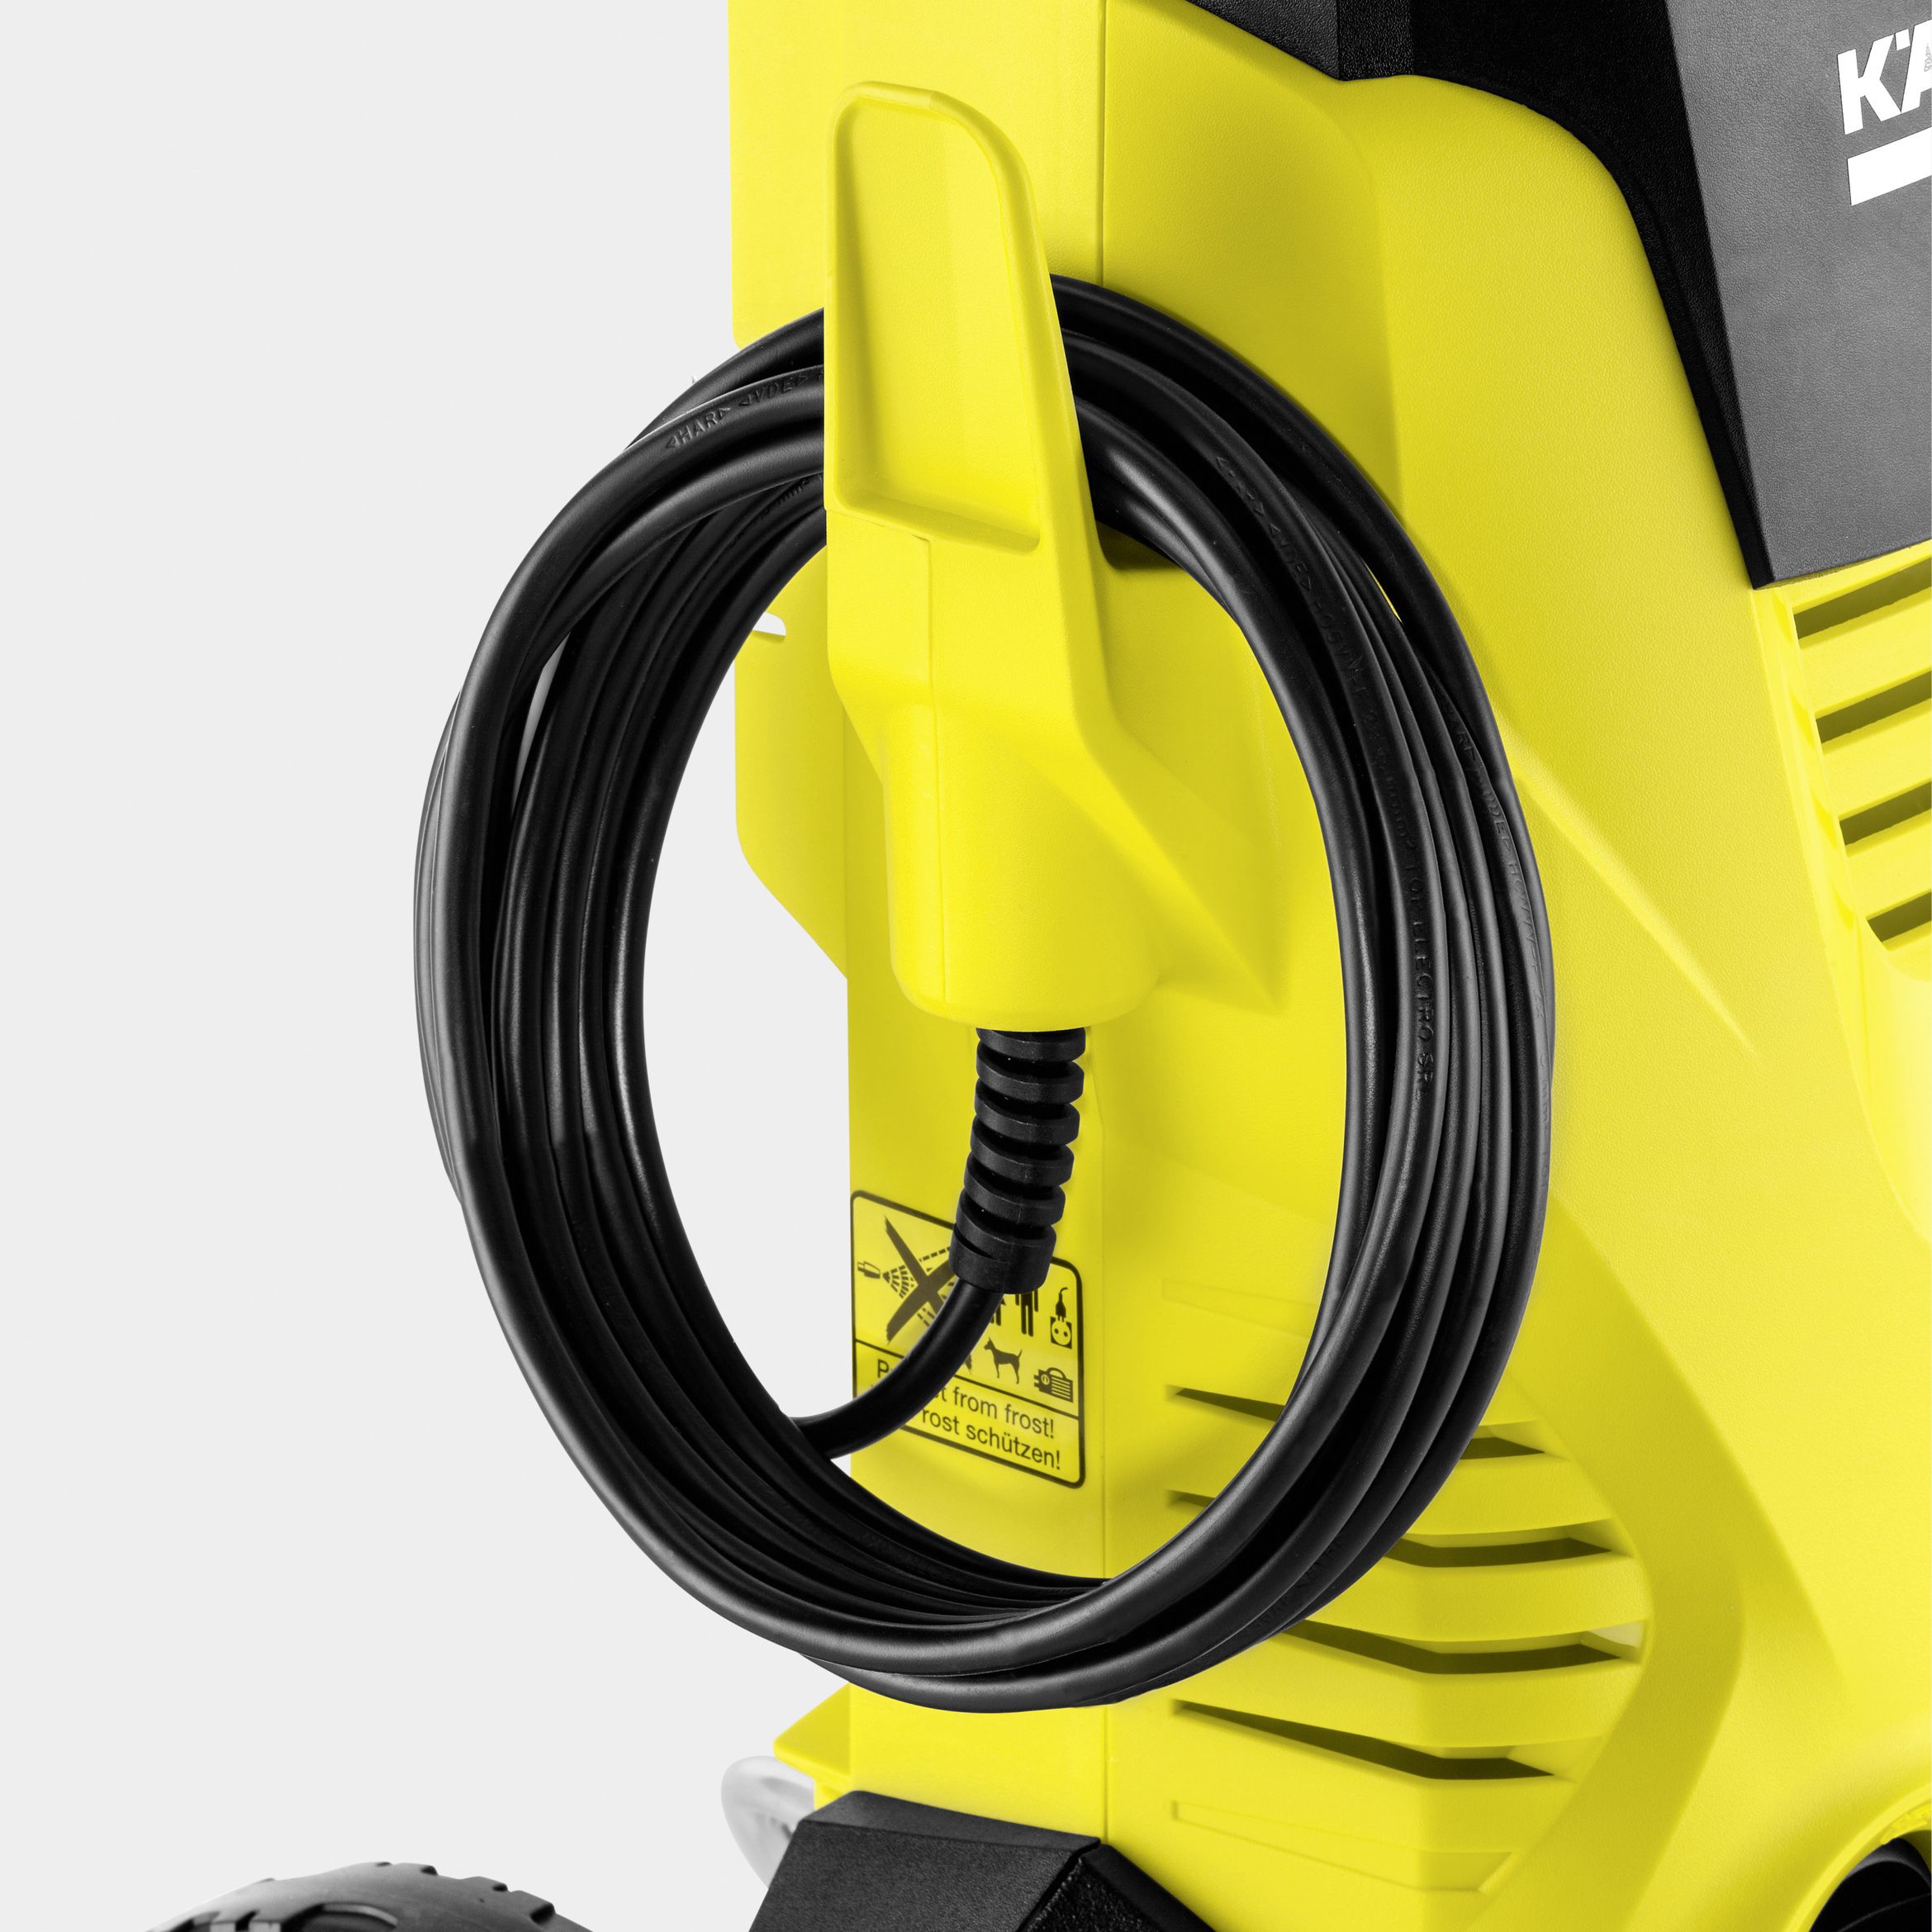 Kärcher K3 Power Control Corded Pressure washer 1.6kW 16761020